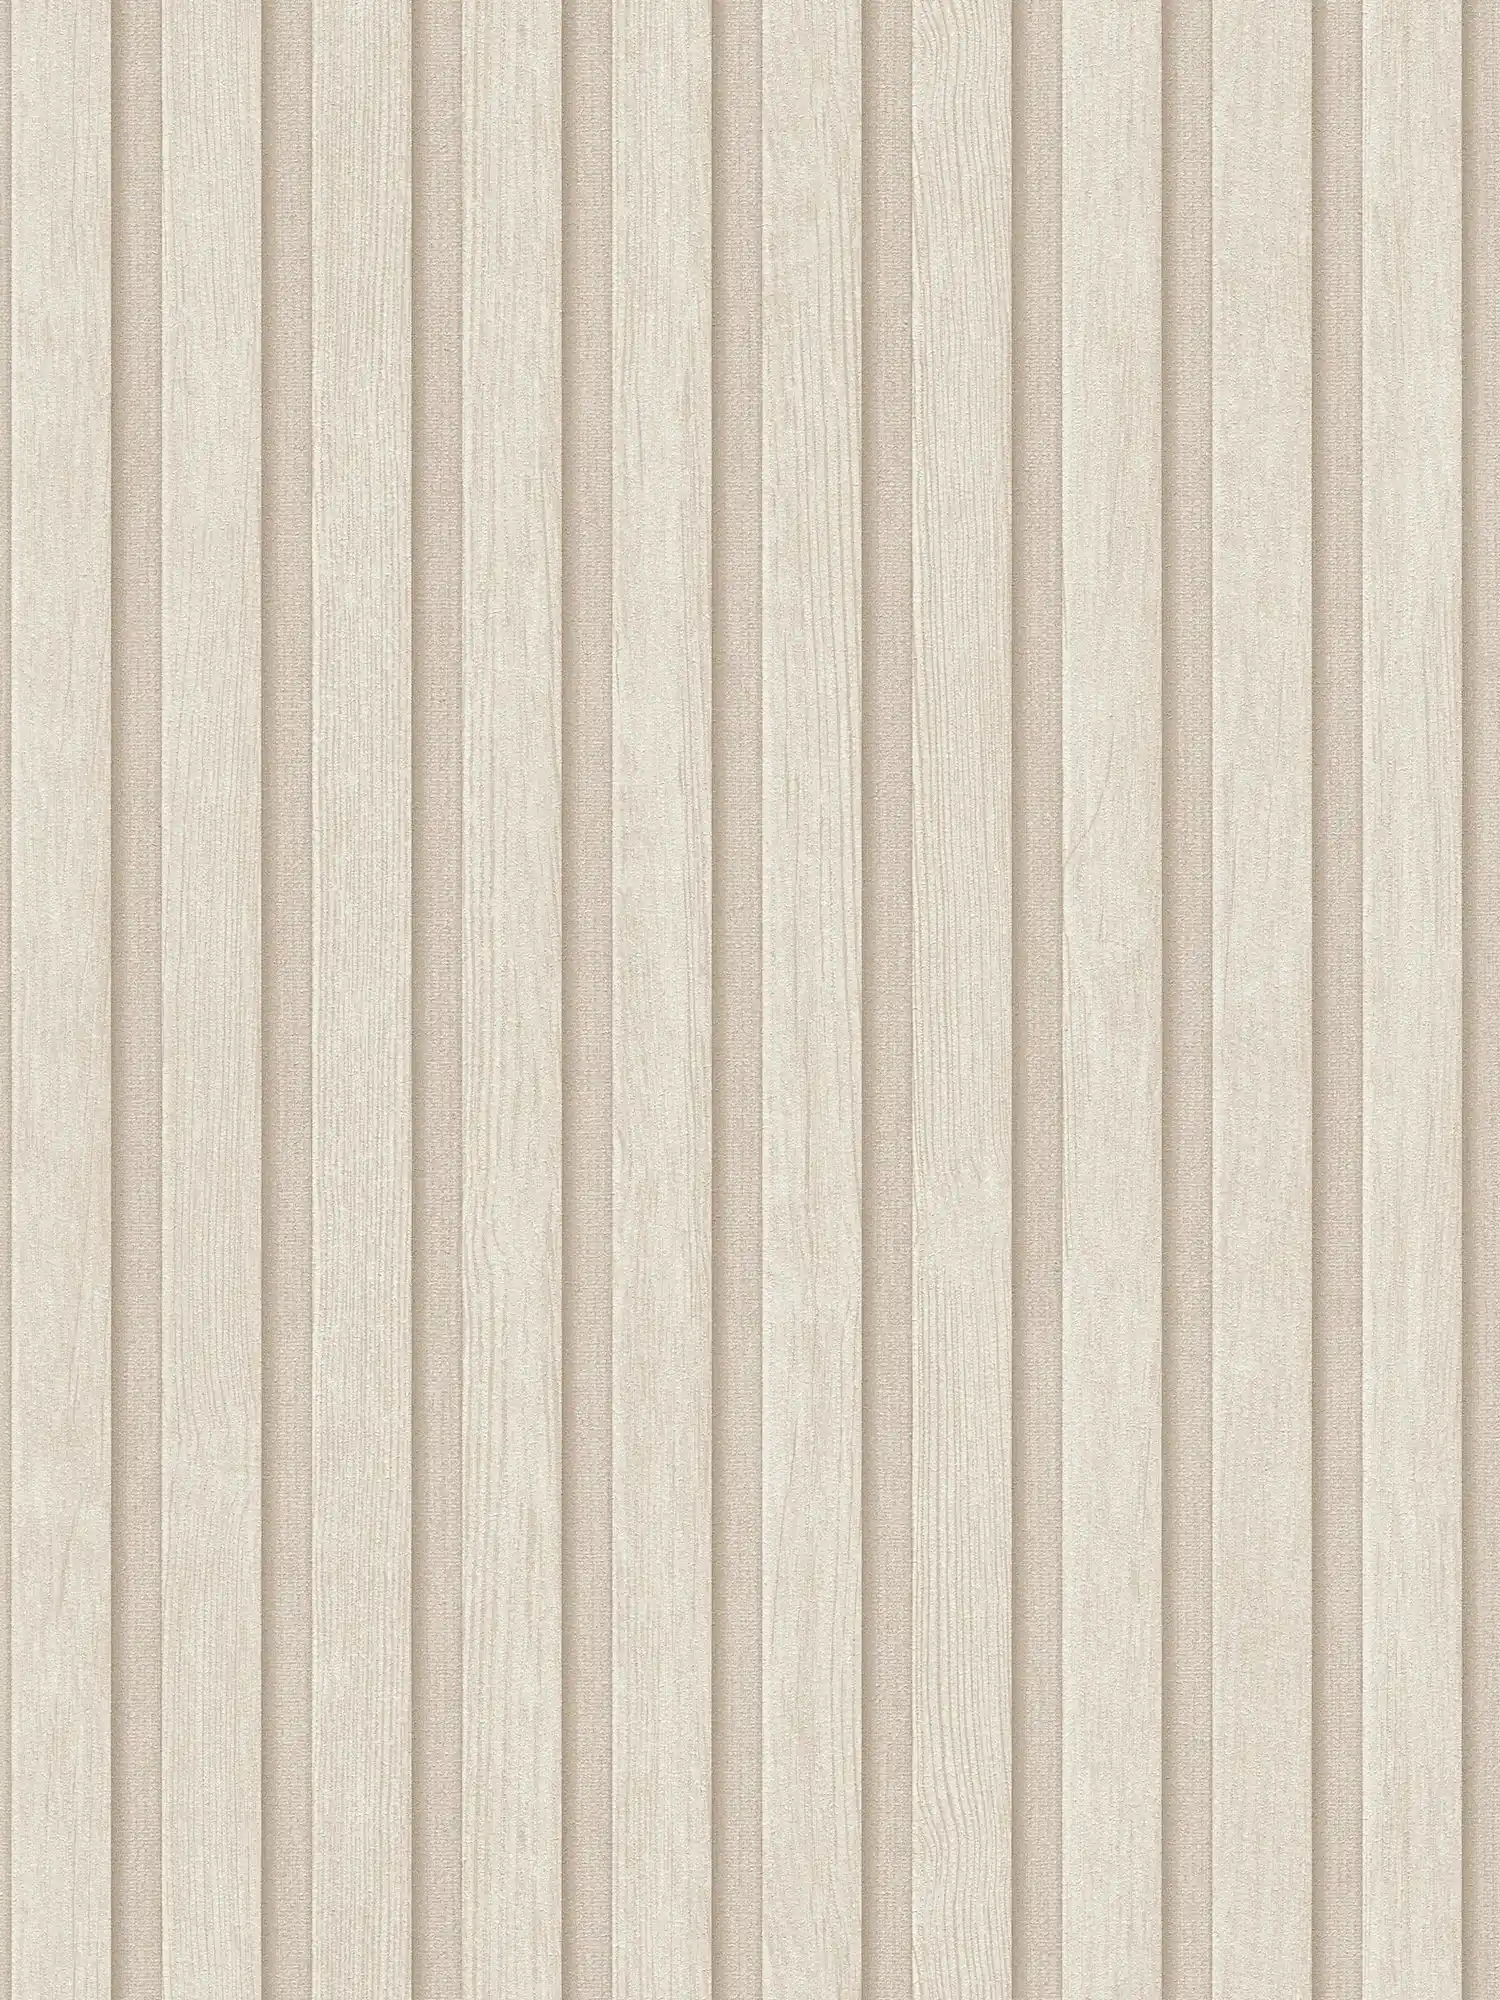 Papier peint intissé imitation bois look panneaux acoustiques - crème, beige
